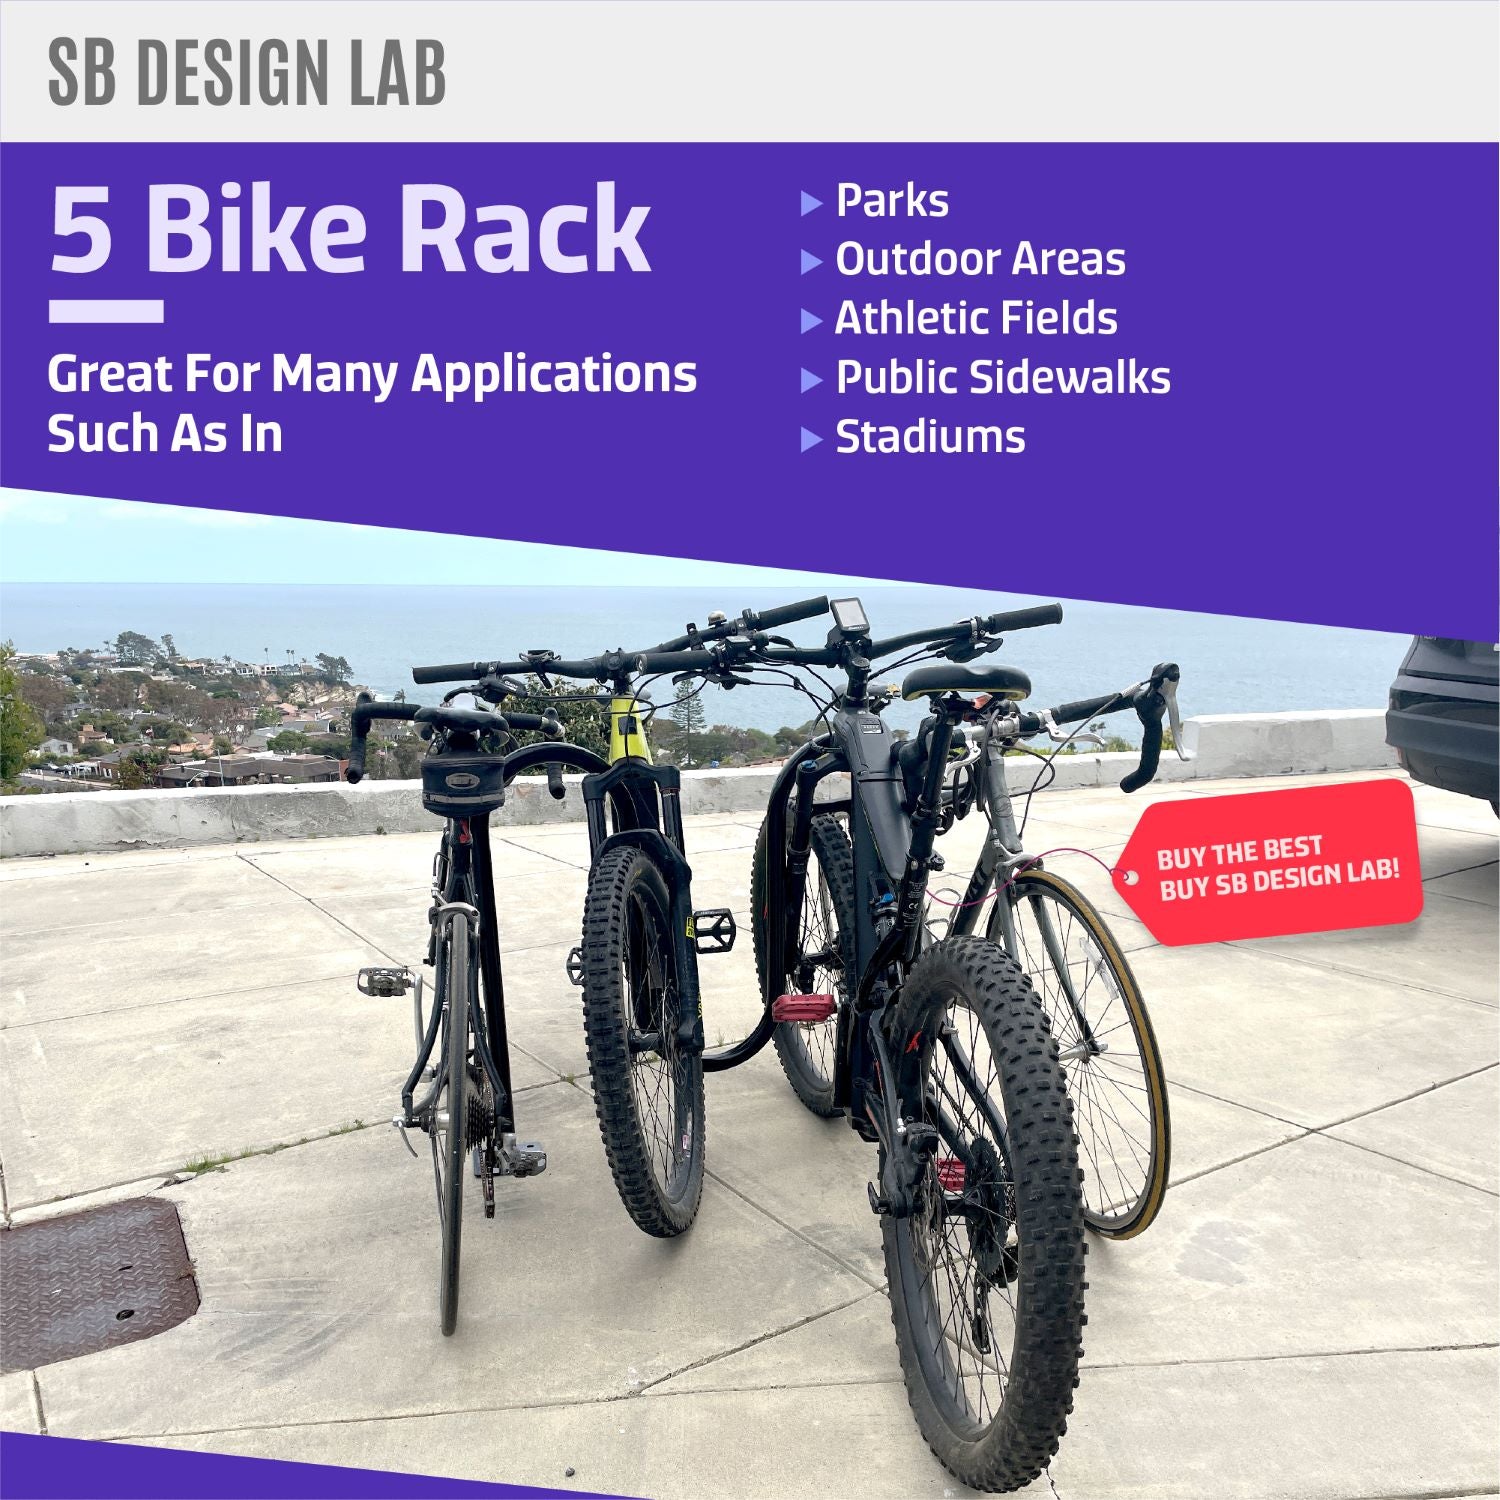 Commercial Wave Bike Racks - Dual Loop - In Ground Installation